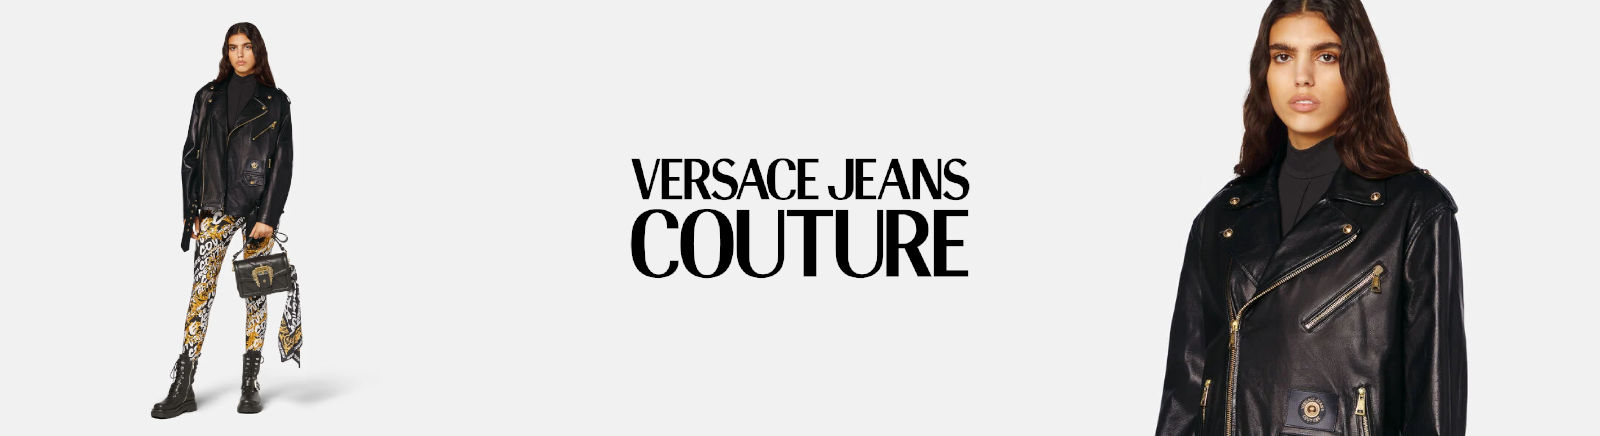 Juppen: Versace Jeans Halbschuhe für Herren online shoppen